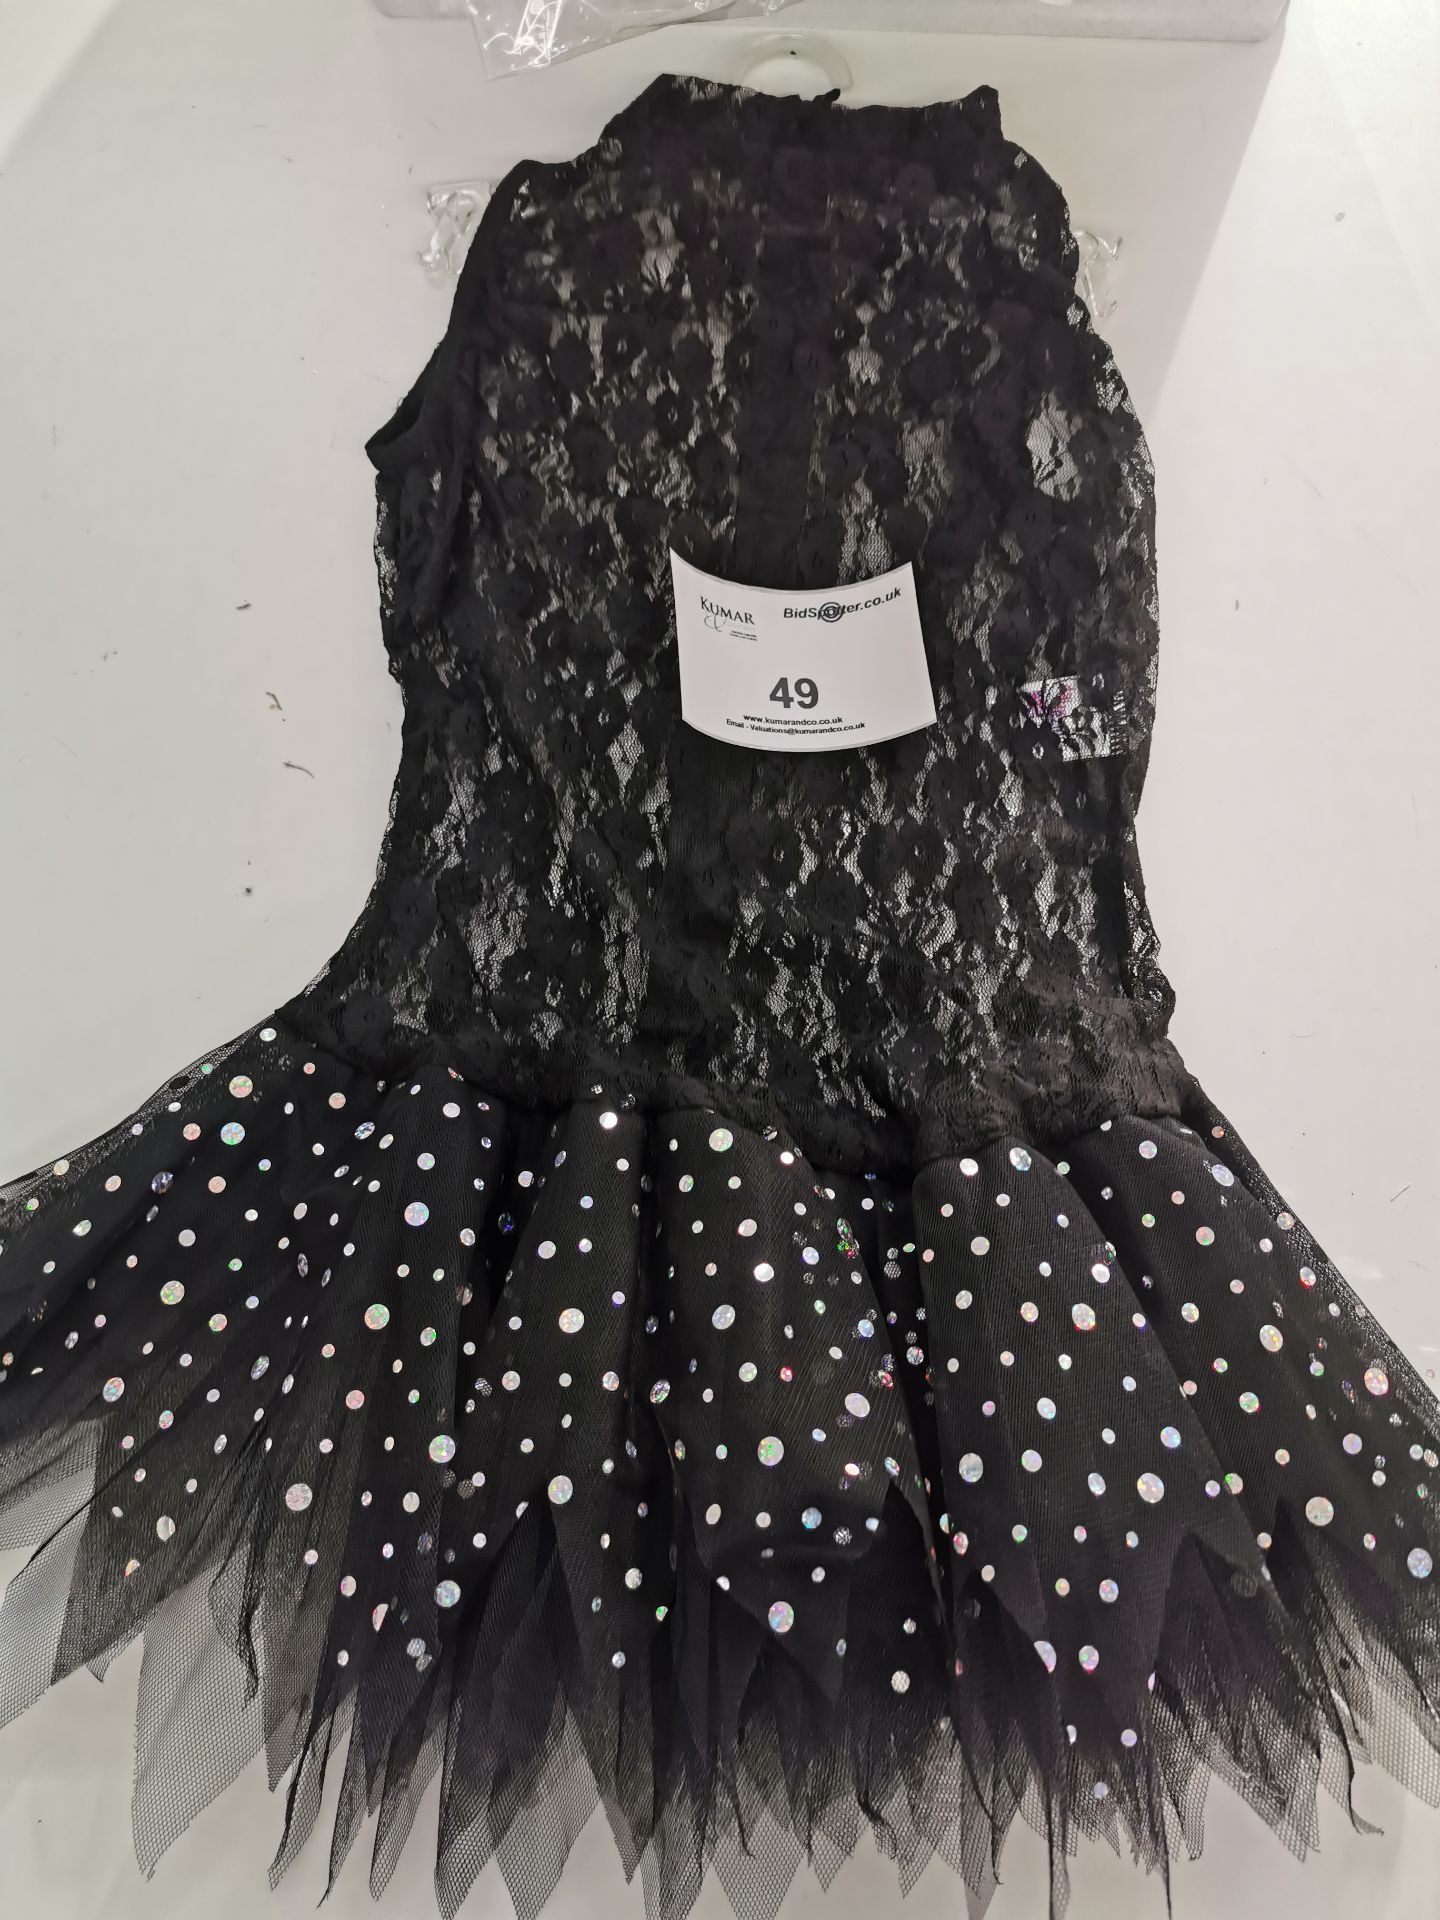 17pc Black lace sequin dress various sizes